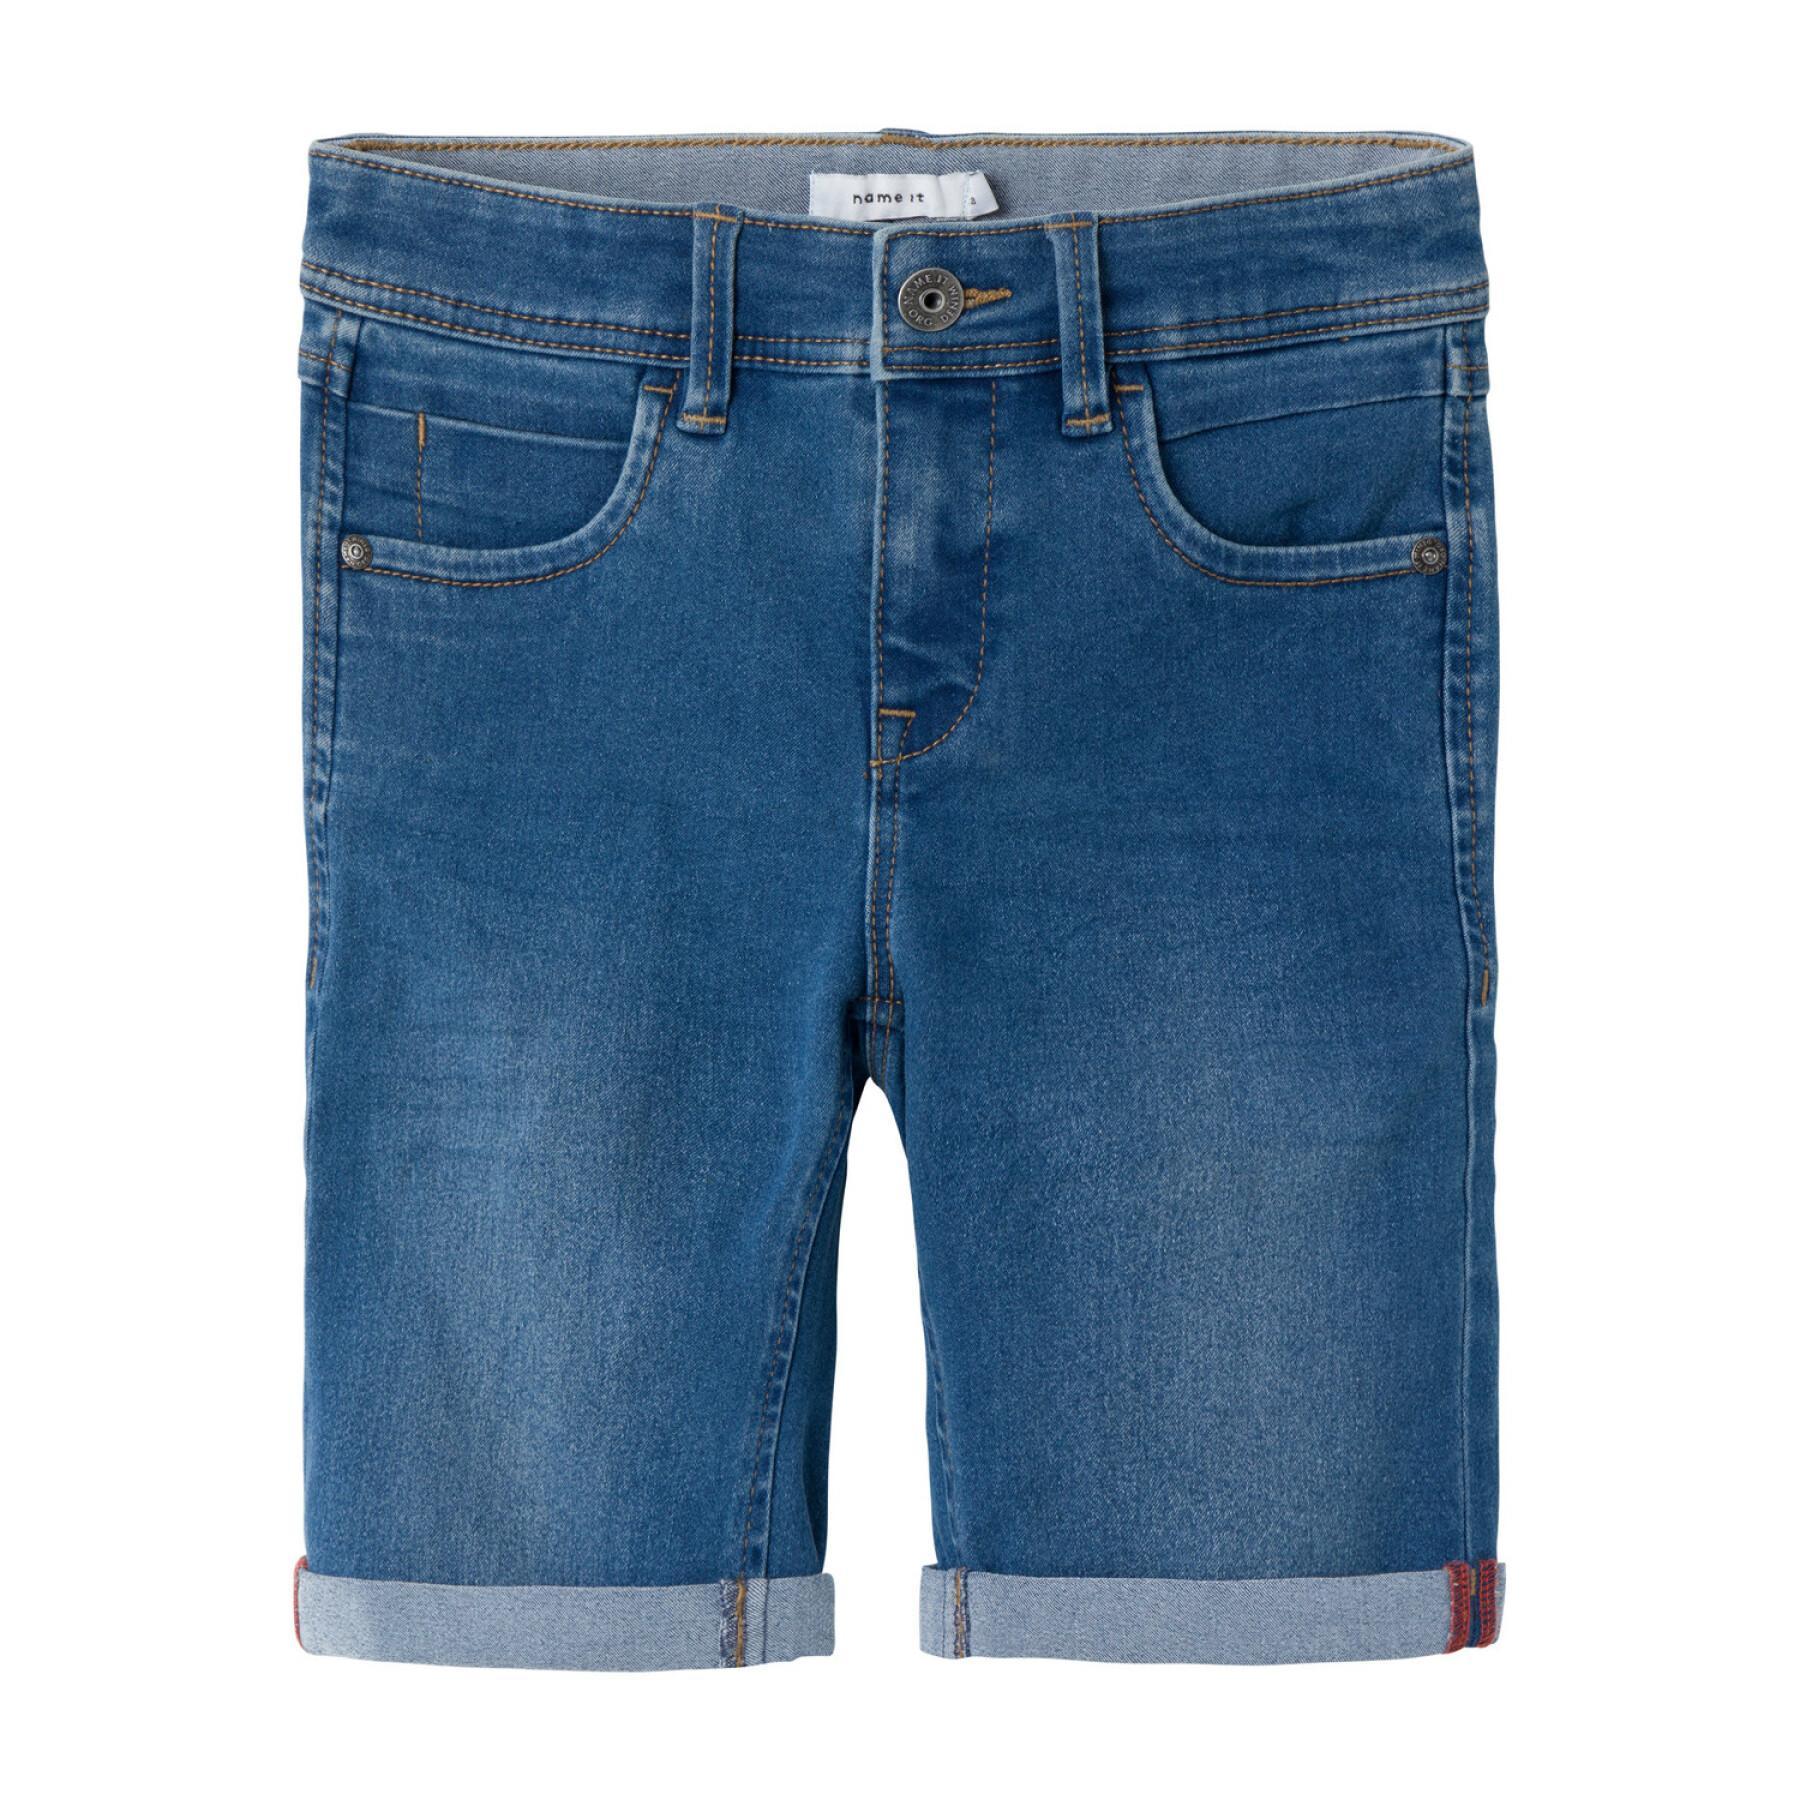 Boy's jean shorts Name it Silas 2272-TX